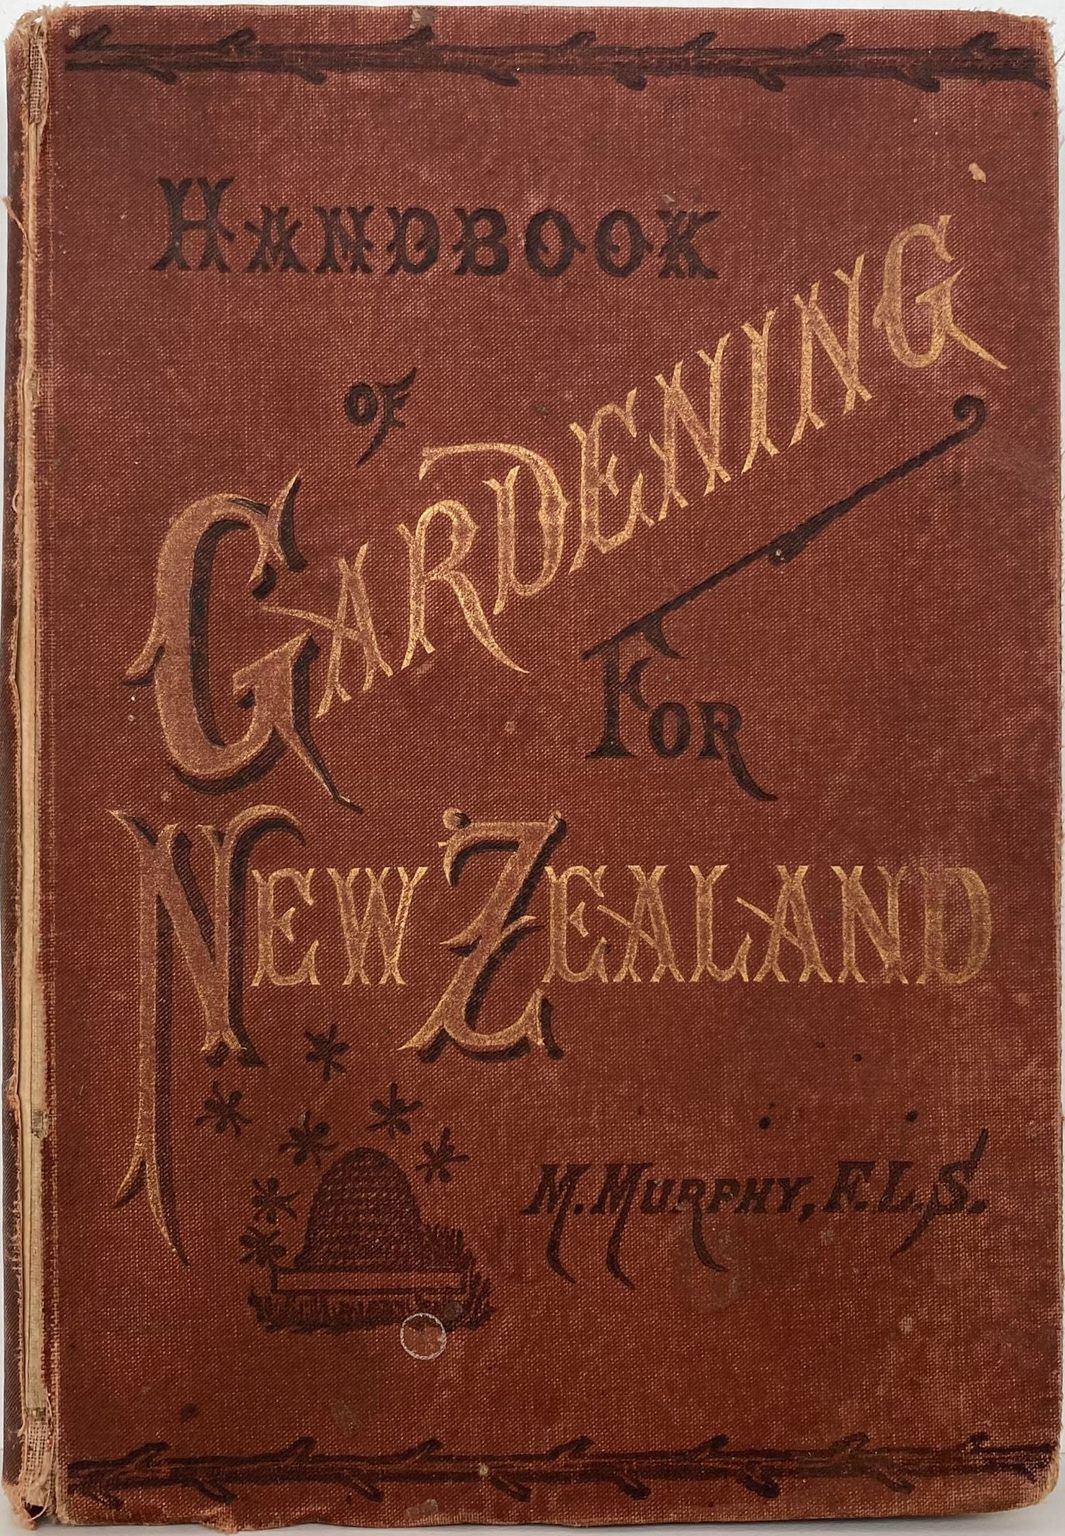 HANDBOOK OF GARDENING for New Zealand